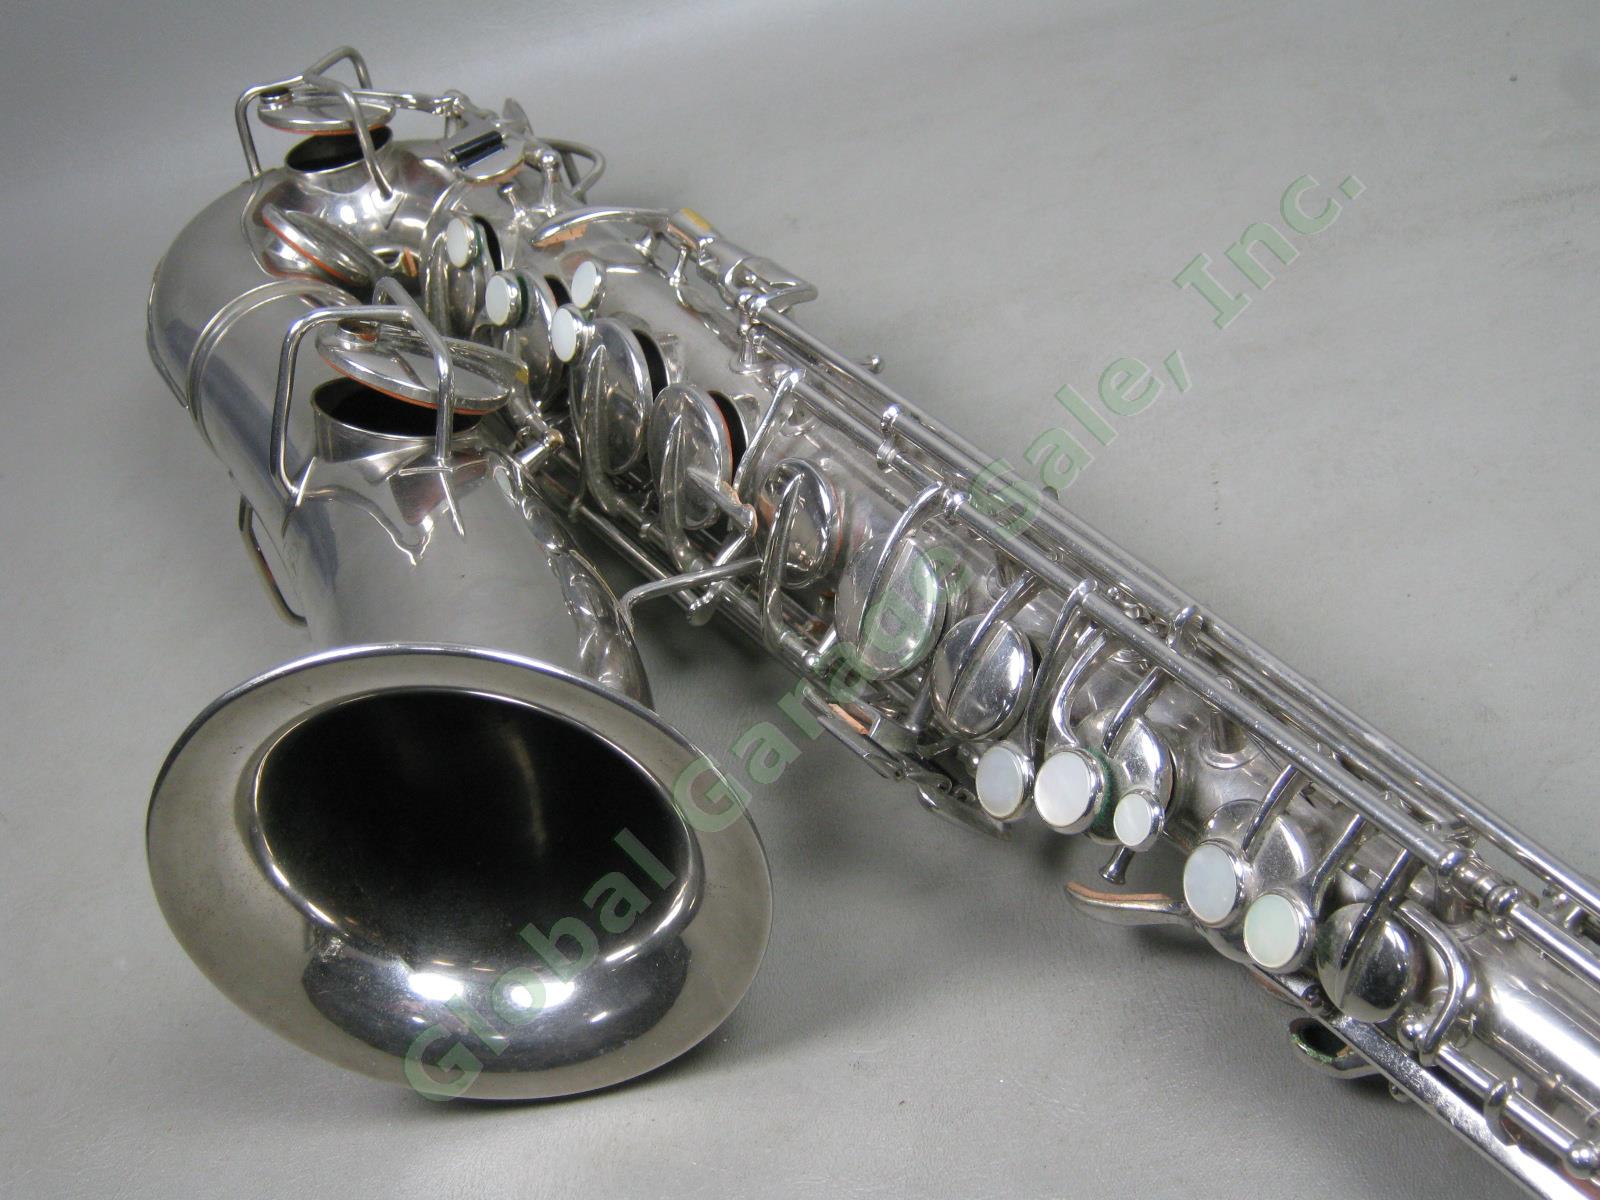 Vtg Antique C G CG Conn C-Melody Saxophone + Case 1119954 106159 L Patented 1914 5